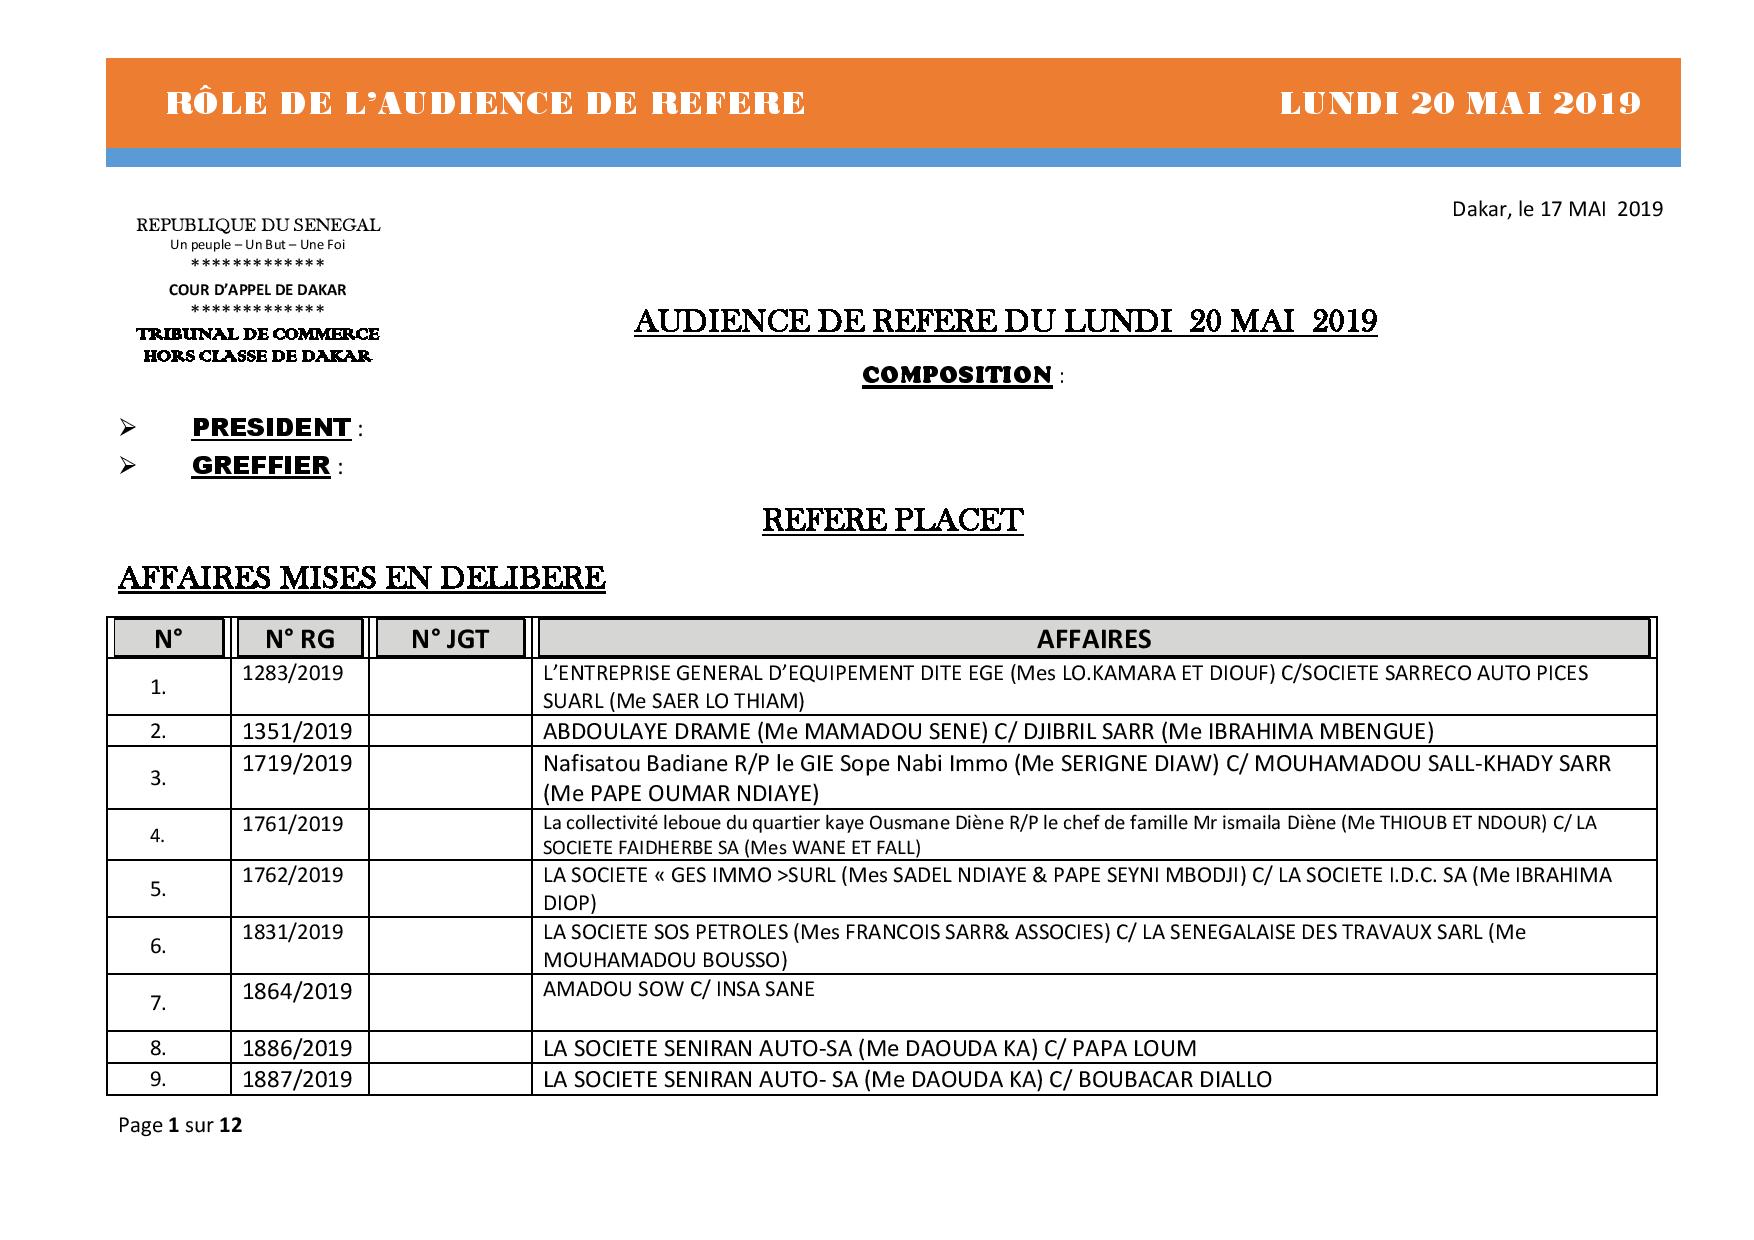 Rôle de l'audience de référé du Tribunal de Commerce hors classe de Dakar du 20 mai 2019